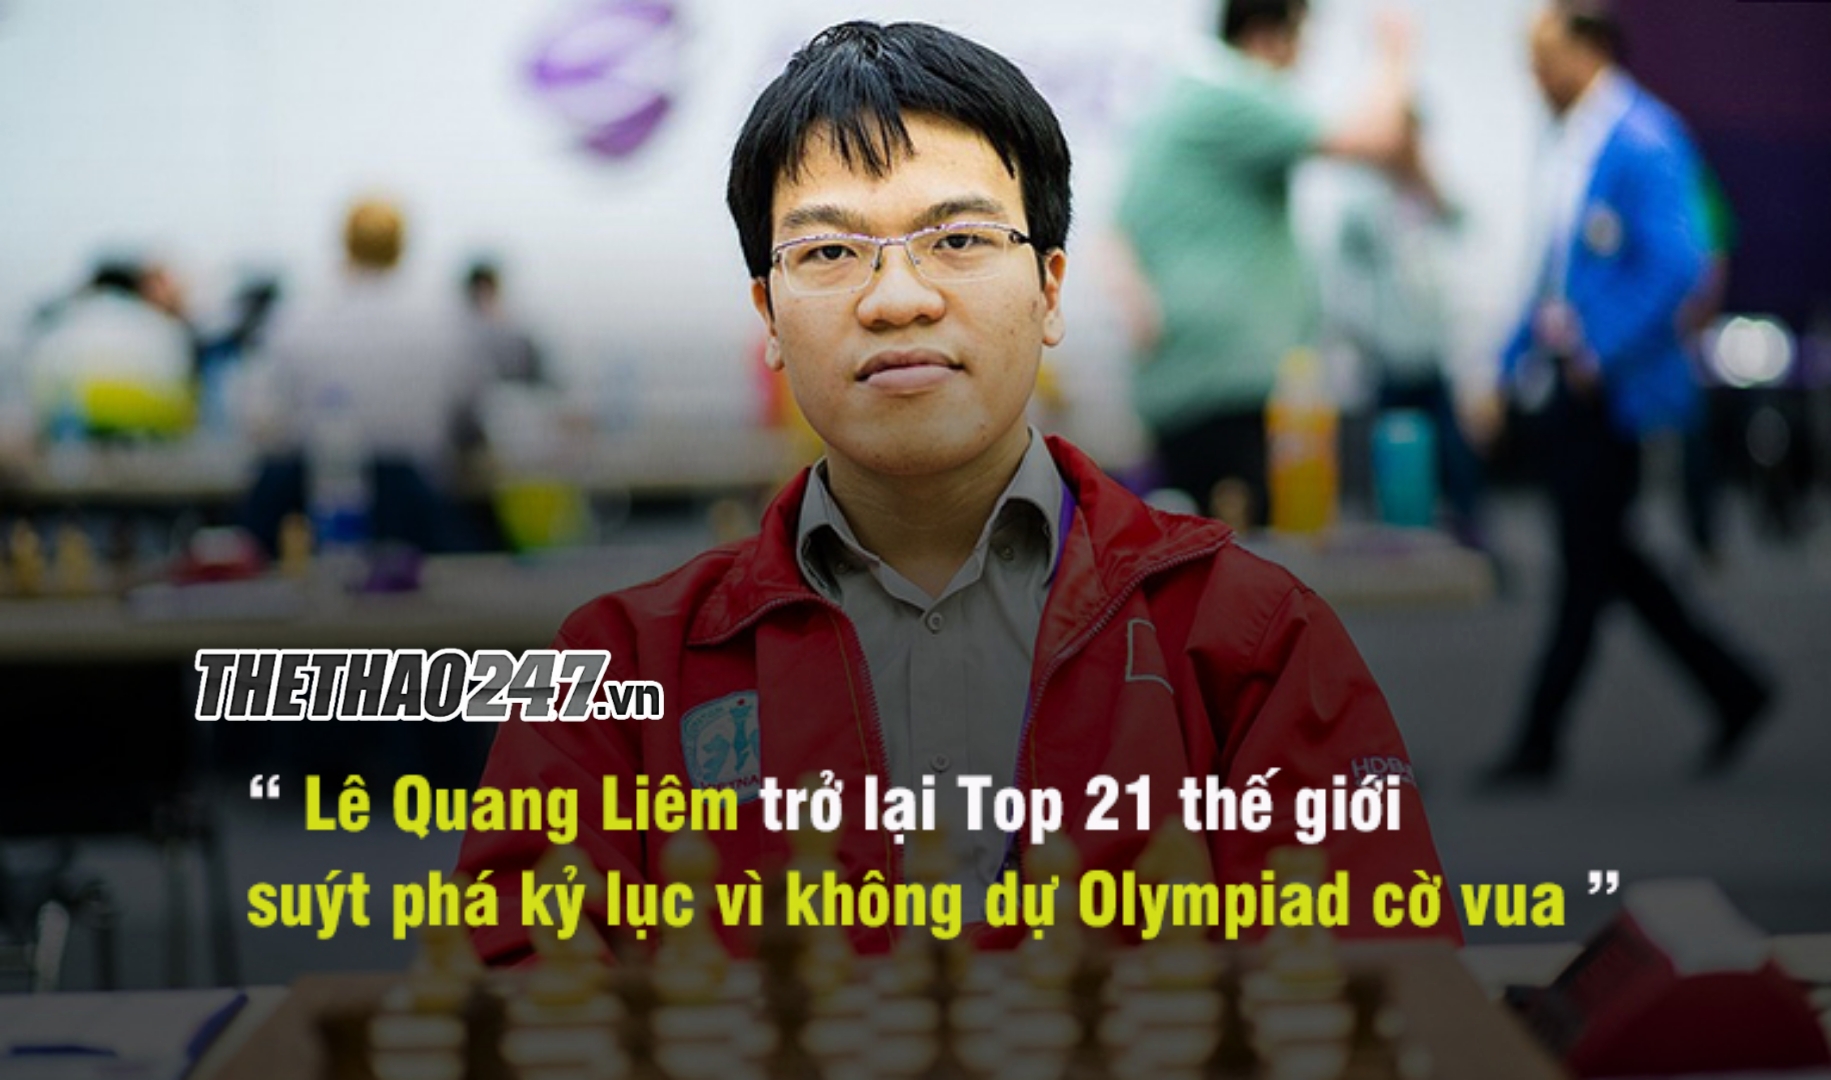 Kỳ thủ Lê Quang Liêm trở lại Top 21 cờ vua thế giới